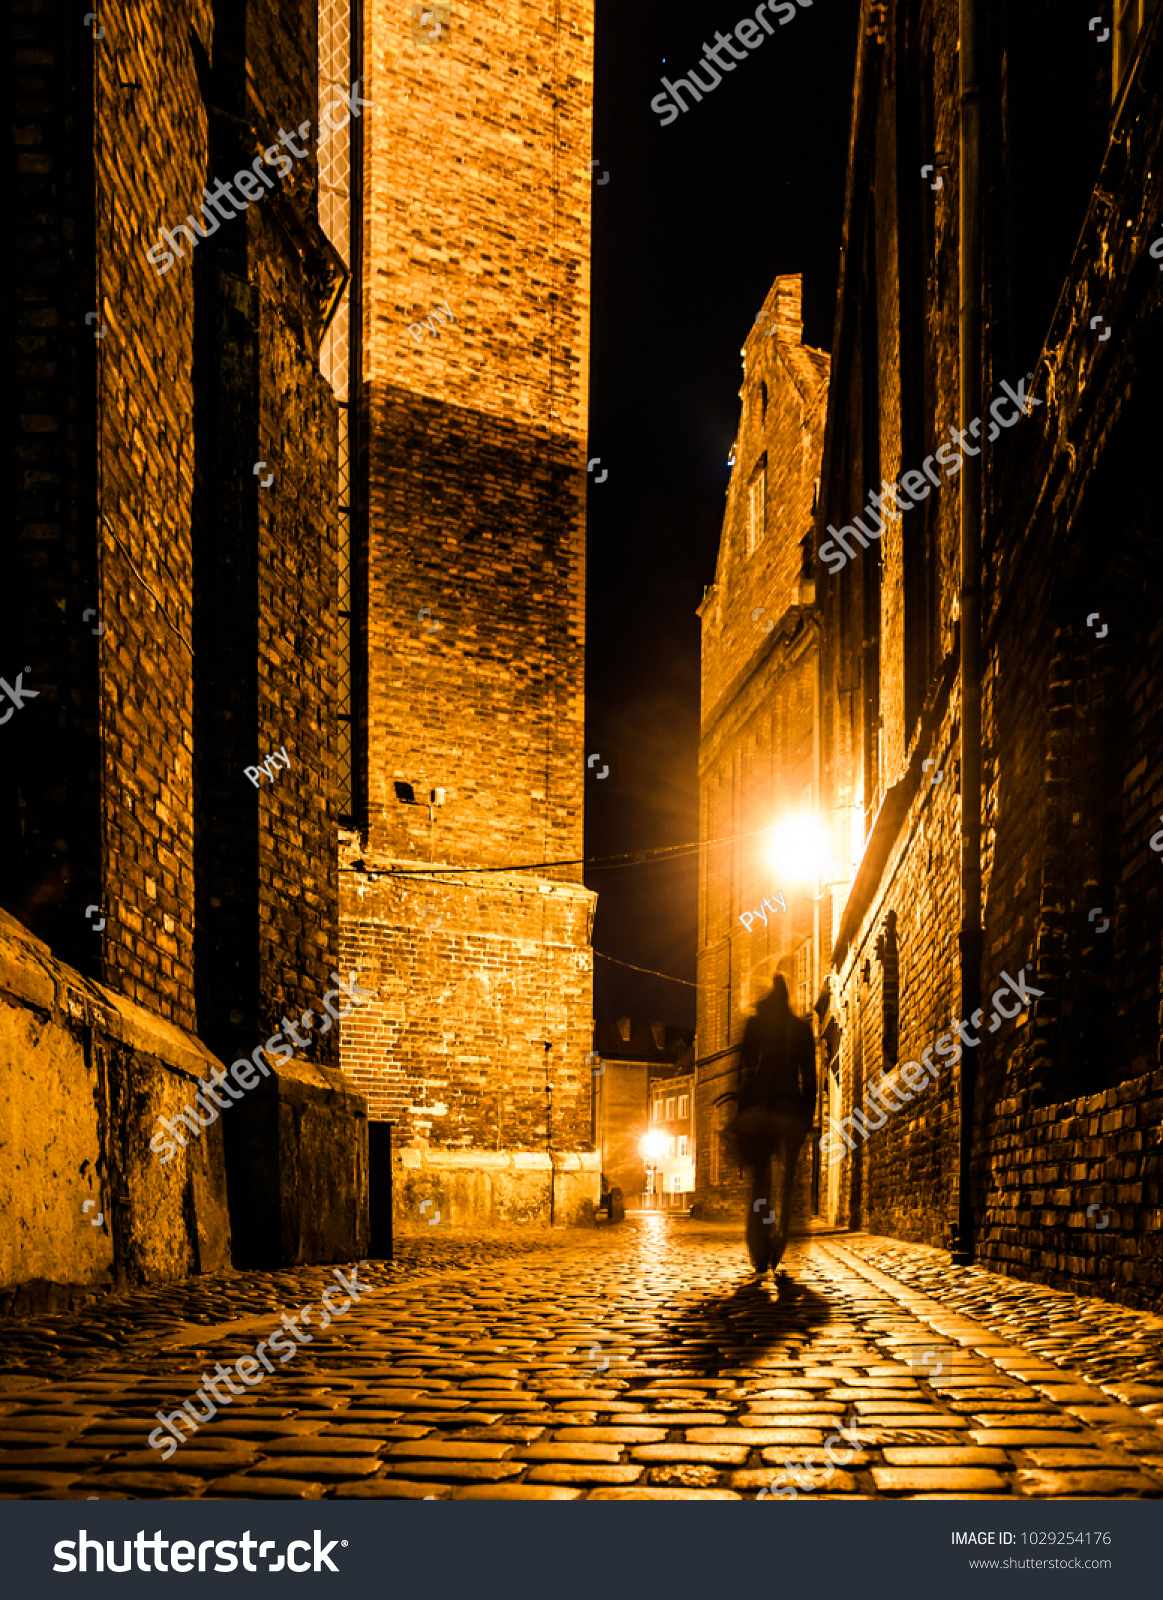 暗くぼやけた人の影を持つ 古い町の石畳の通り の写真素材 今すぐ編集